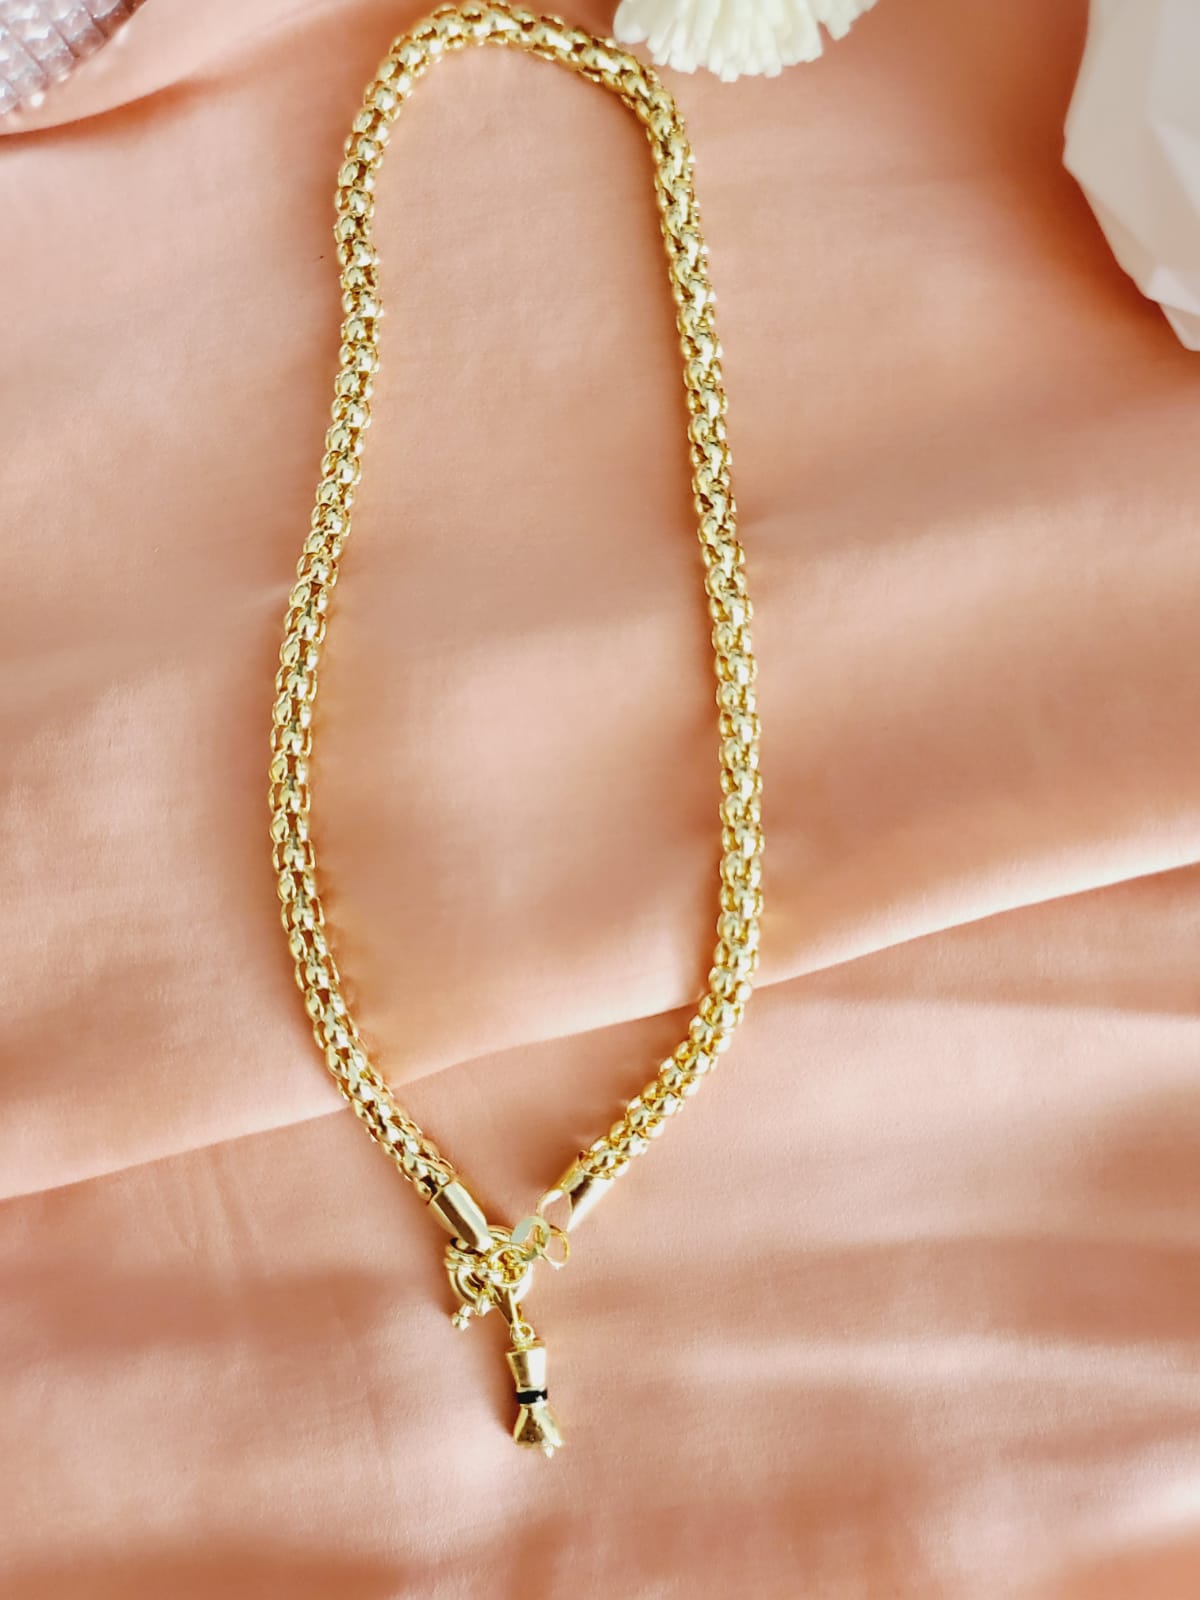 Moana Sea Charm Gold Filled Necklaces – Moana Treasures